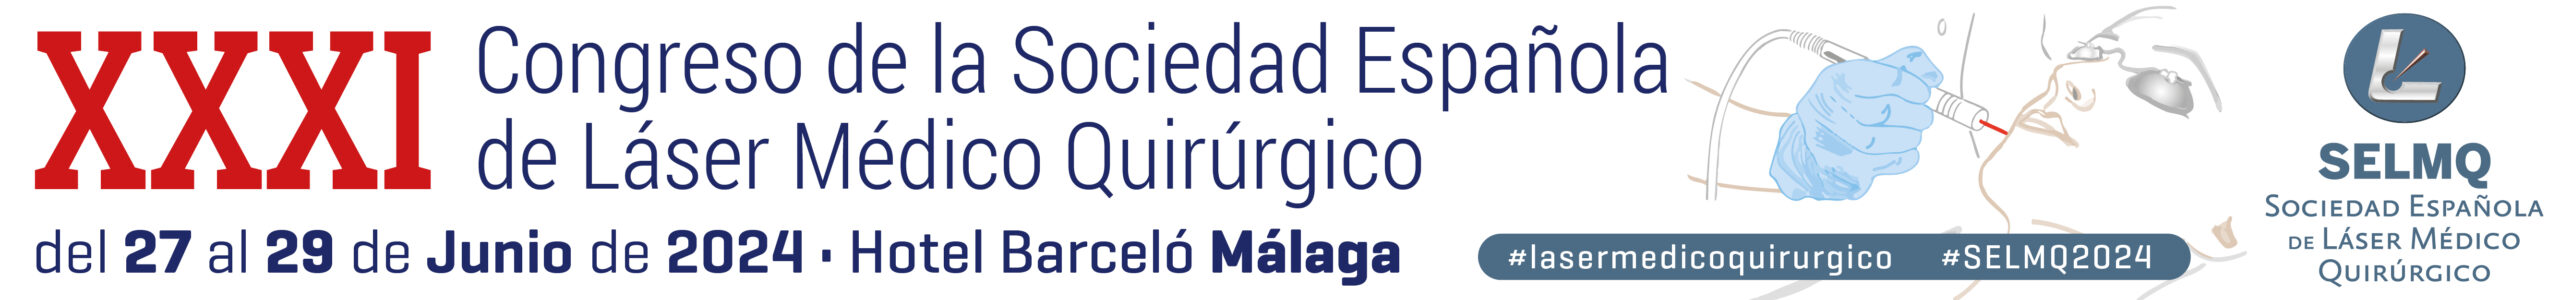 XXXI Congreso de la Sociedad Española de Láser Médico Quirúrgico